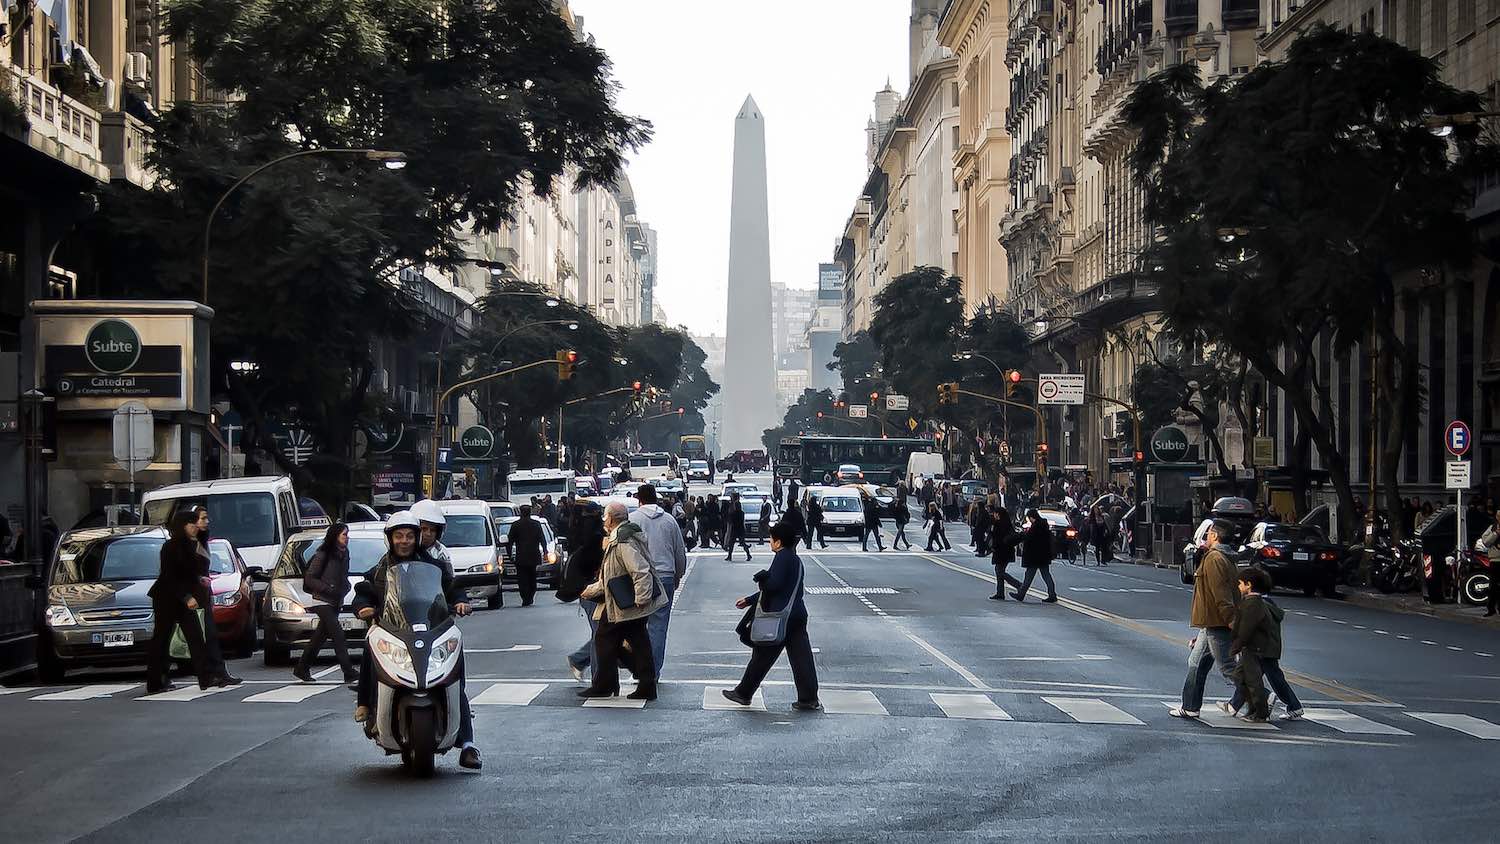 Obelisco, coração do centro histórico de Buenos Aires, uma região repleta de bons hotéis. Ótima área para ficar hospedado.